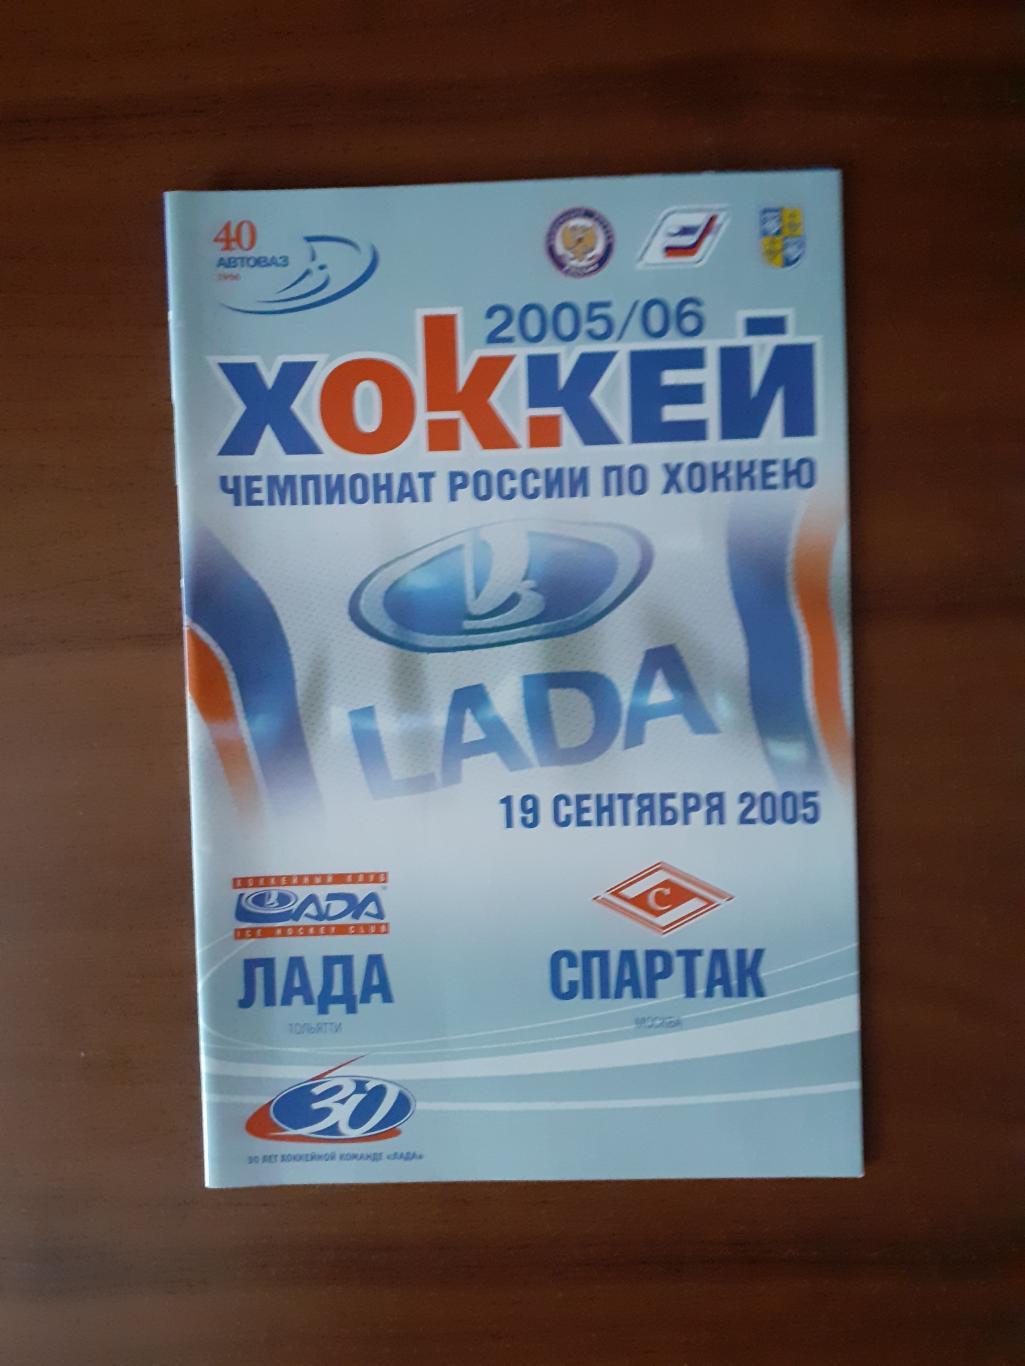 Лада Тольятти - Спартак Москва - 19 сентября 2005г.